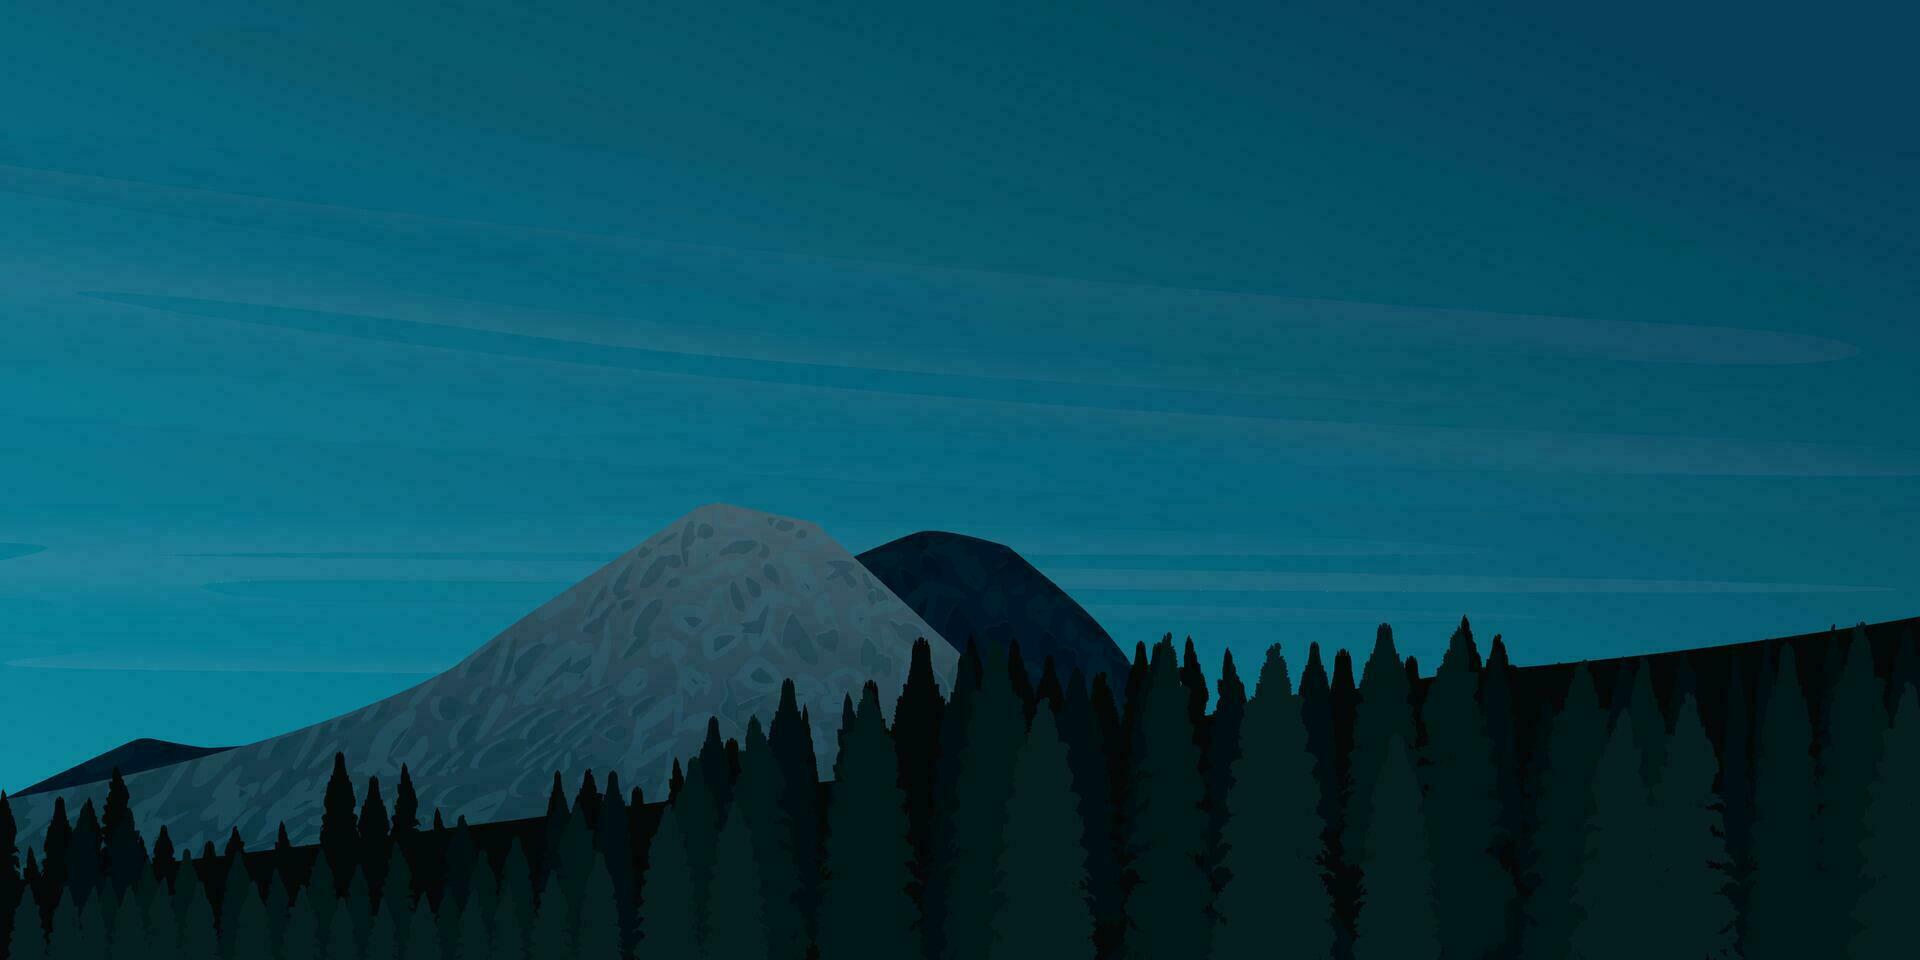 dunkel Blau Berg Landschaft mit Kiefern Wald Vektor Illustration. Sonnenaufgang und Sonnenuntergang im Berge Konzept.